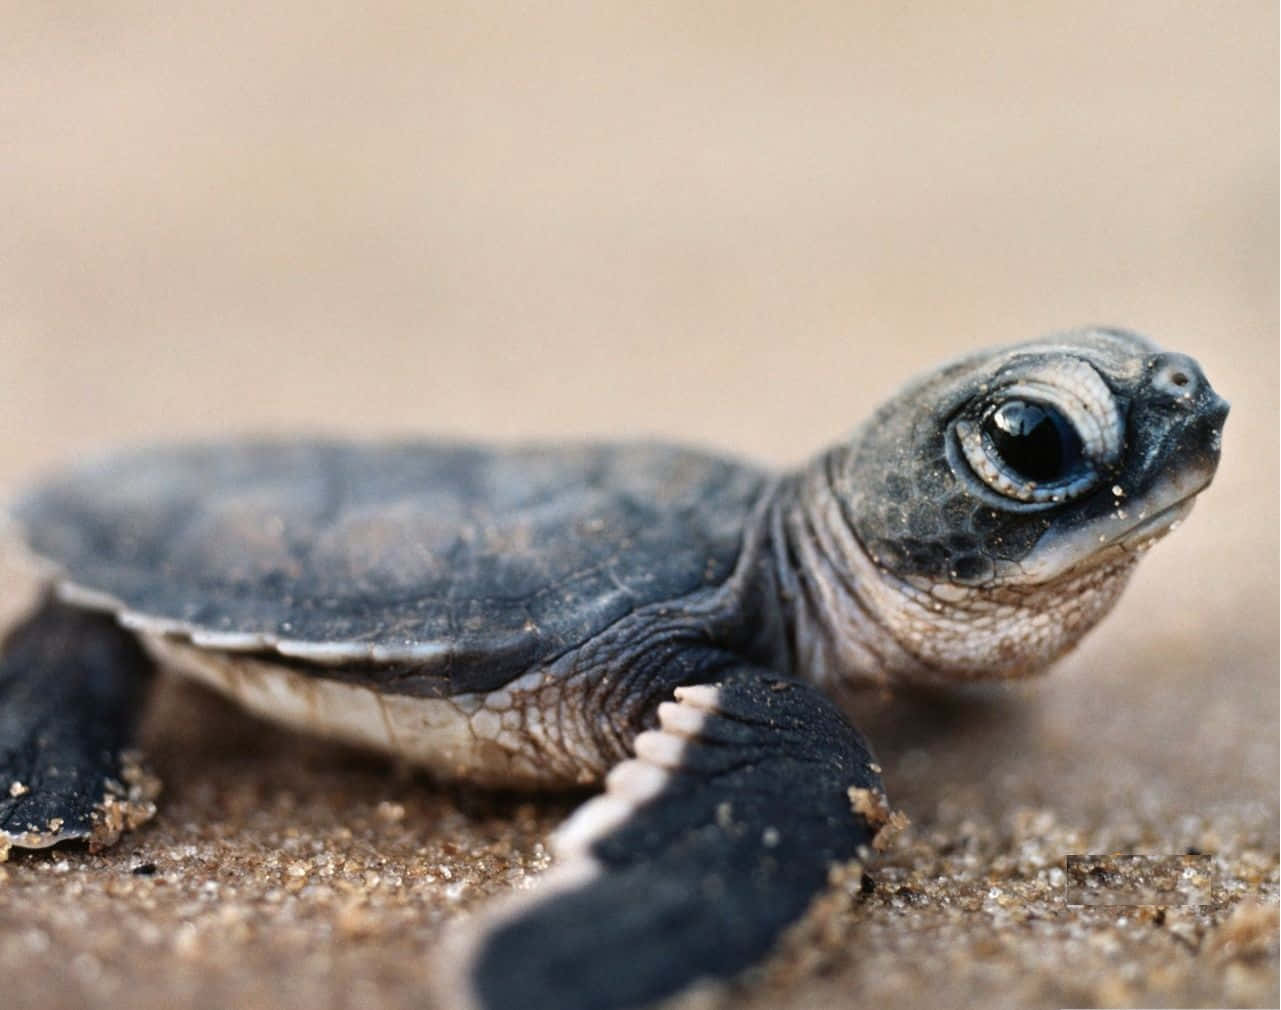 Einebabyschildkröte Läuft Am Strand Entlang.